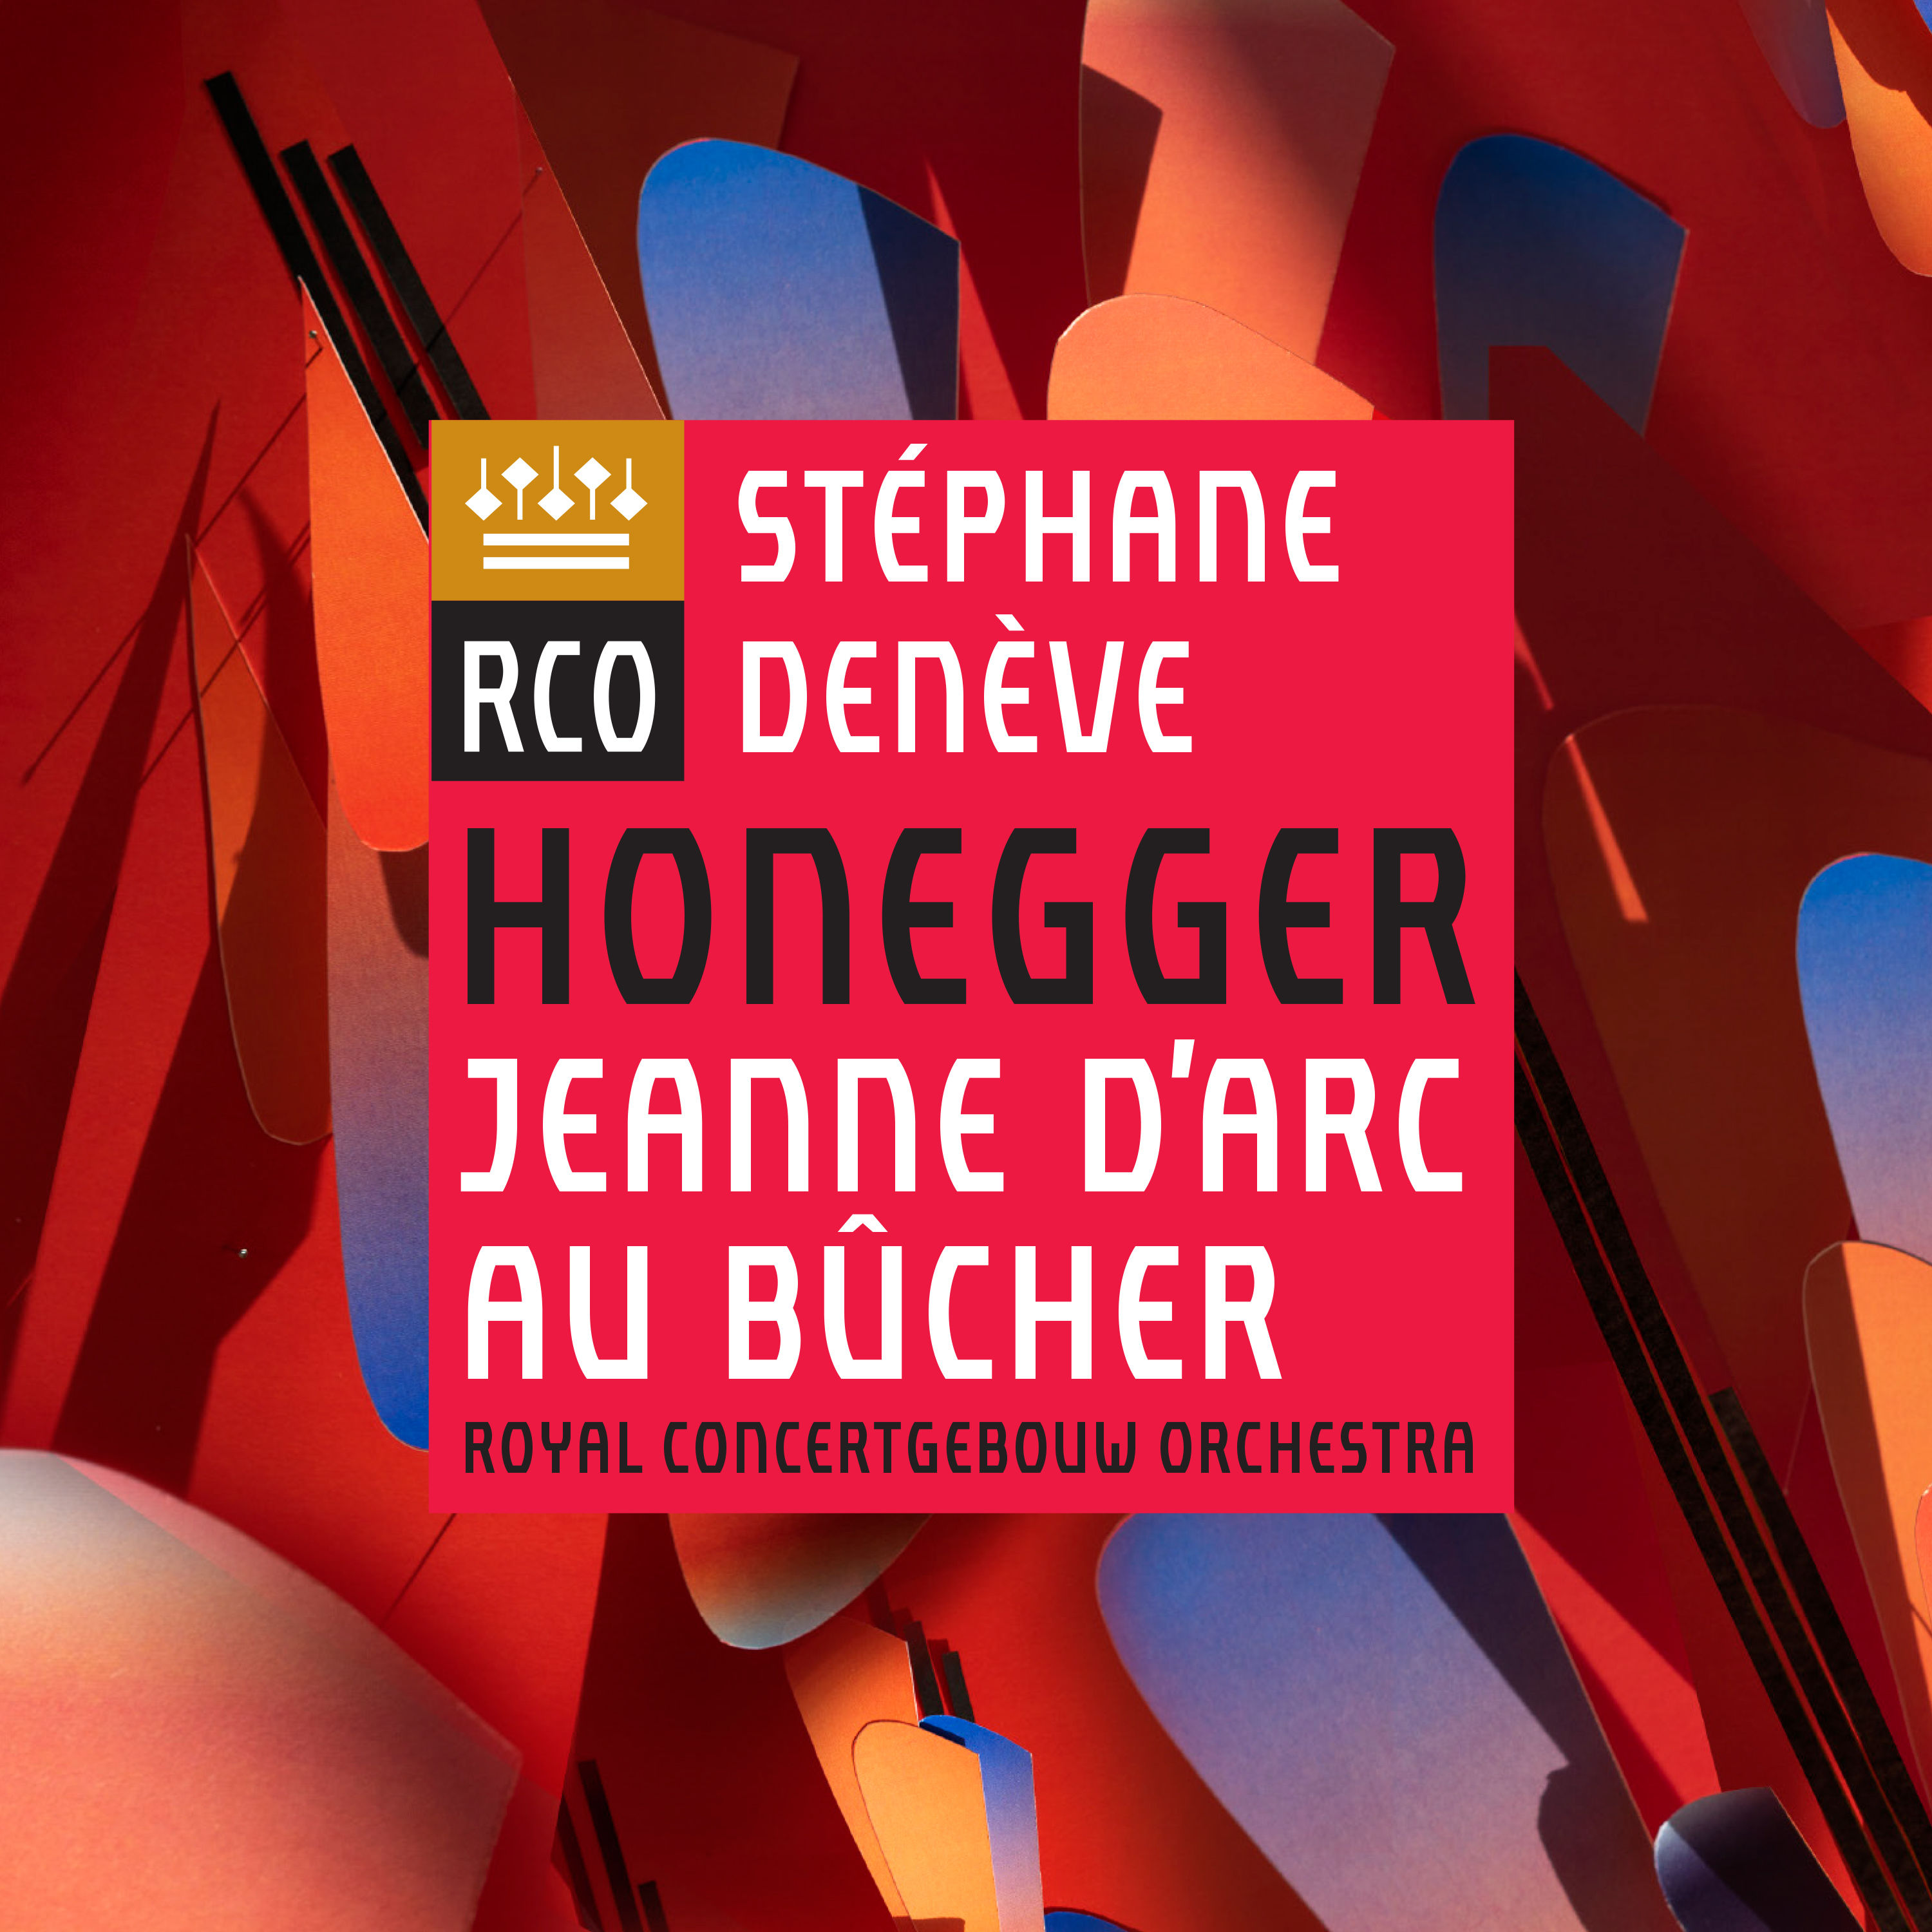 Royal Concertgebouw Orchestra & Stephane Deneve – Honegger: Jeanne d’Arc au bûcher (2019) [FLAC 24bit/96kHz]